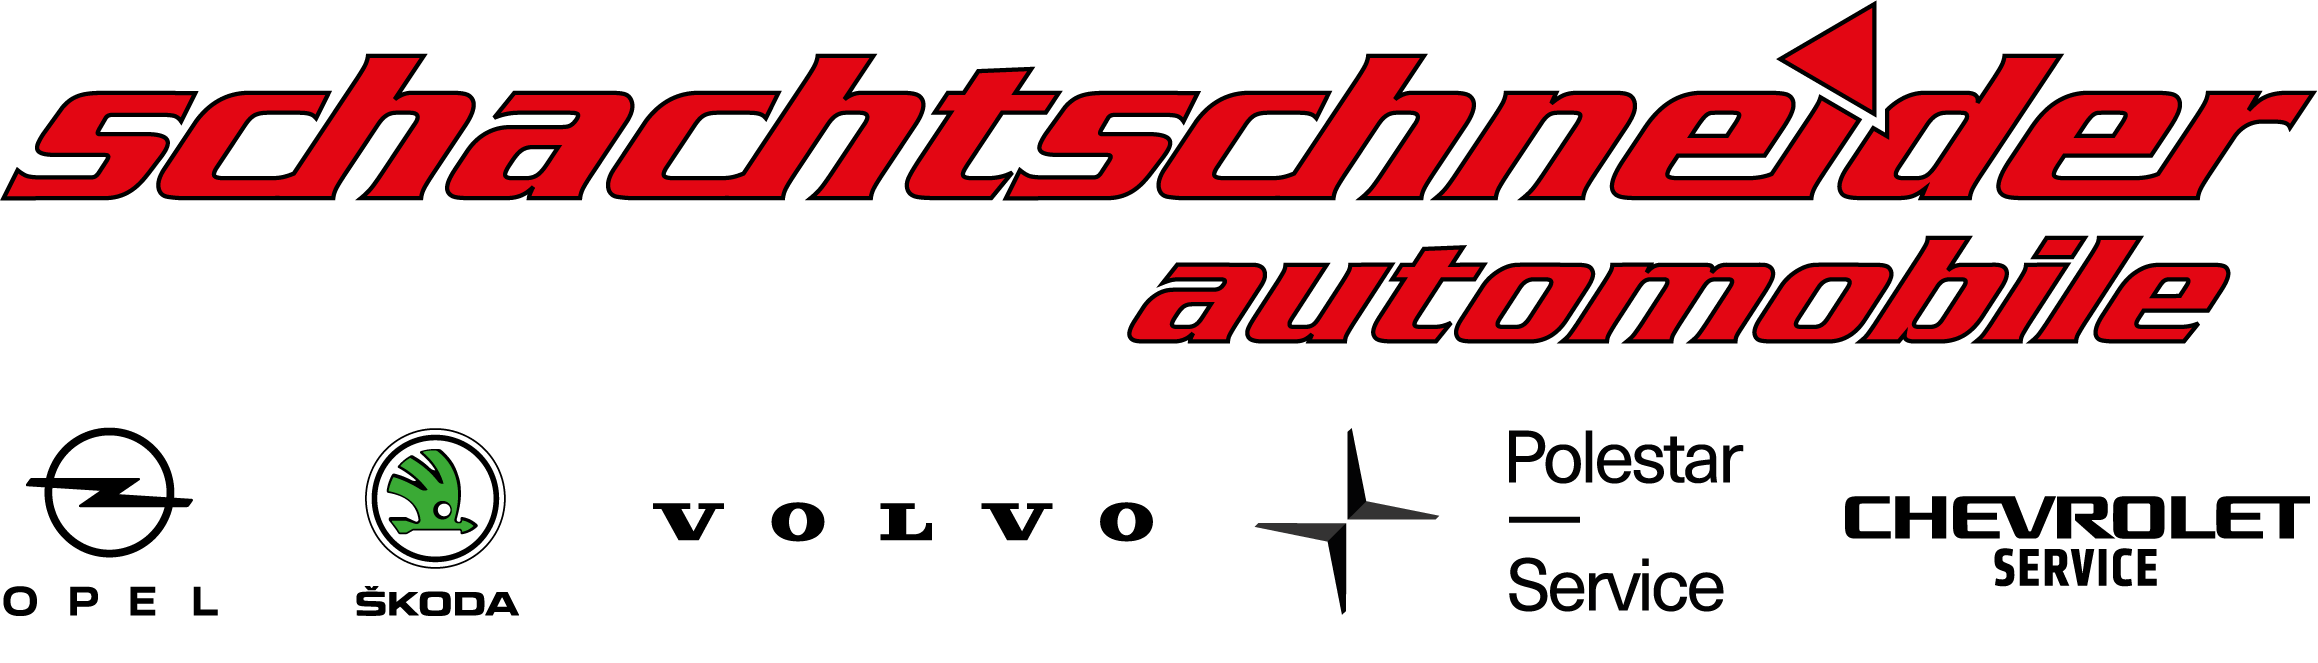 Foto - Schachtschneider GmbH &amp; Co. KG